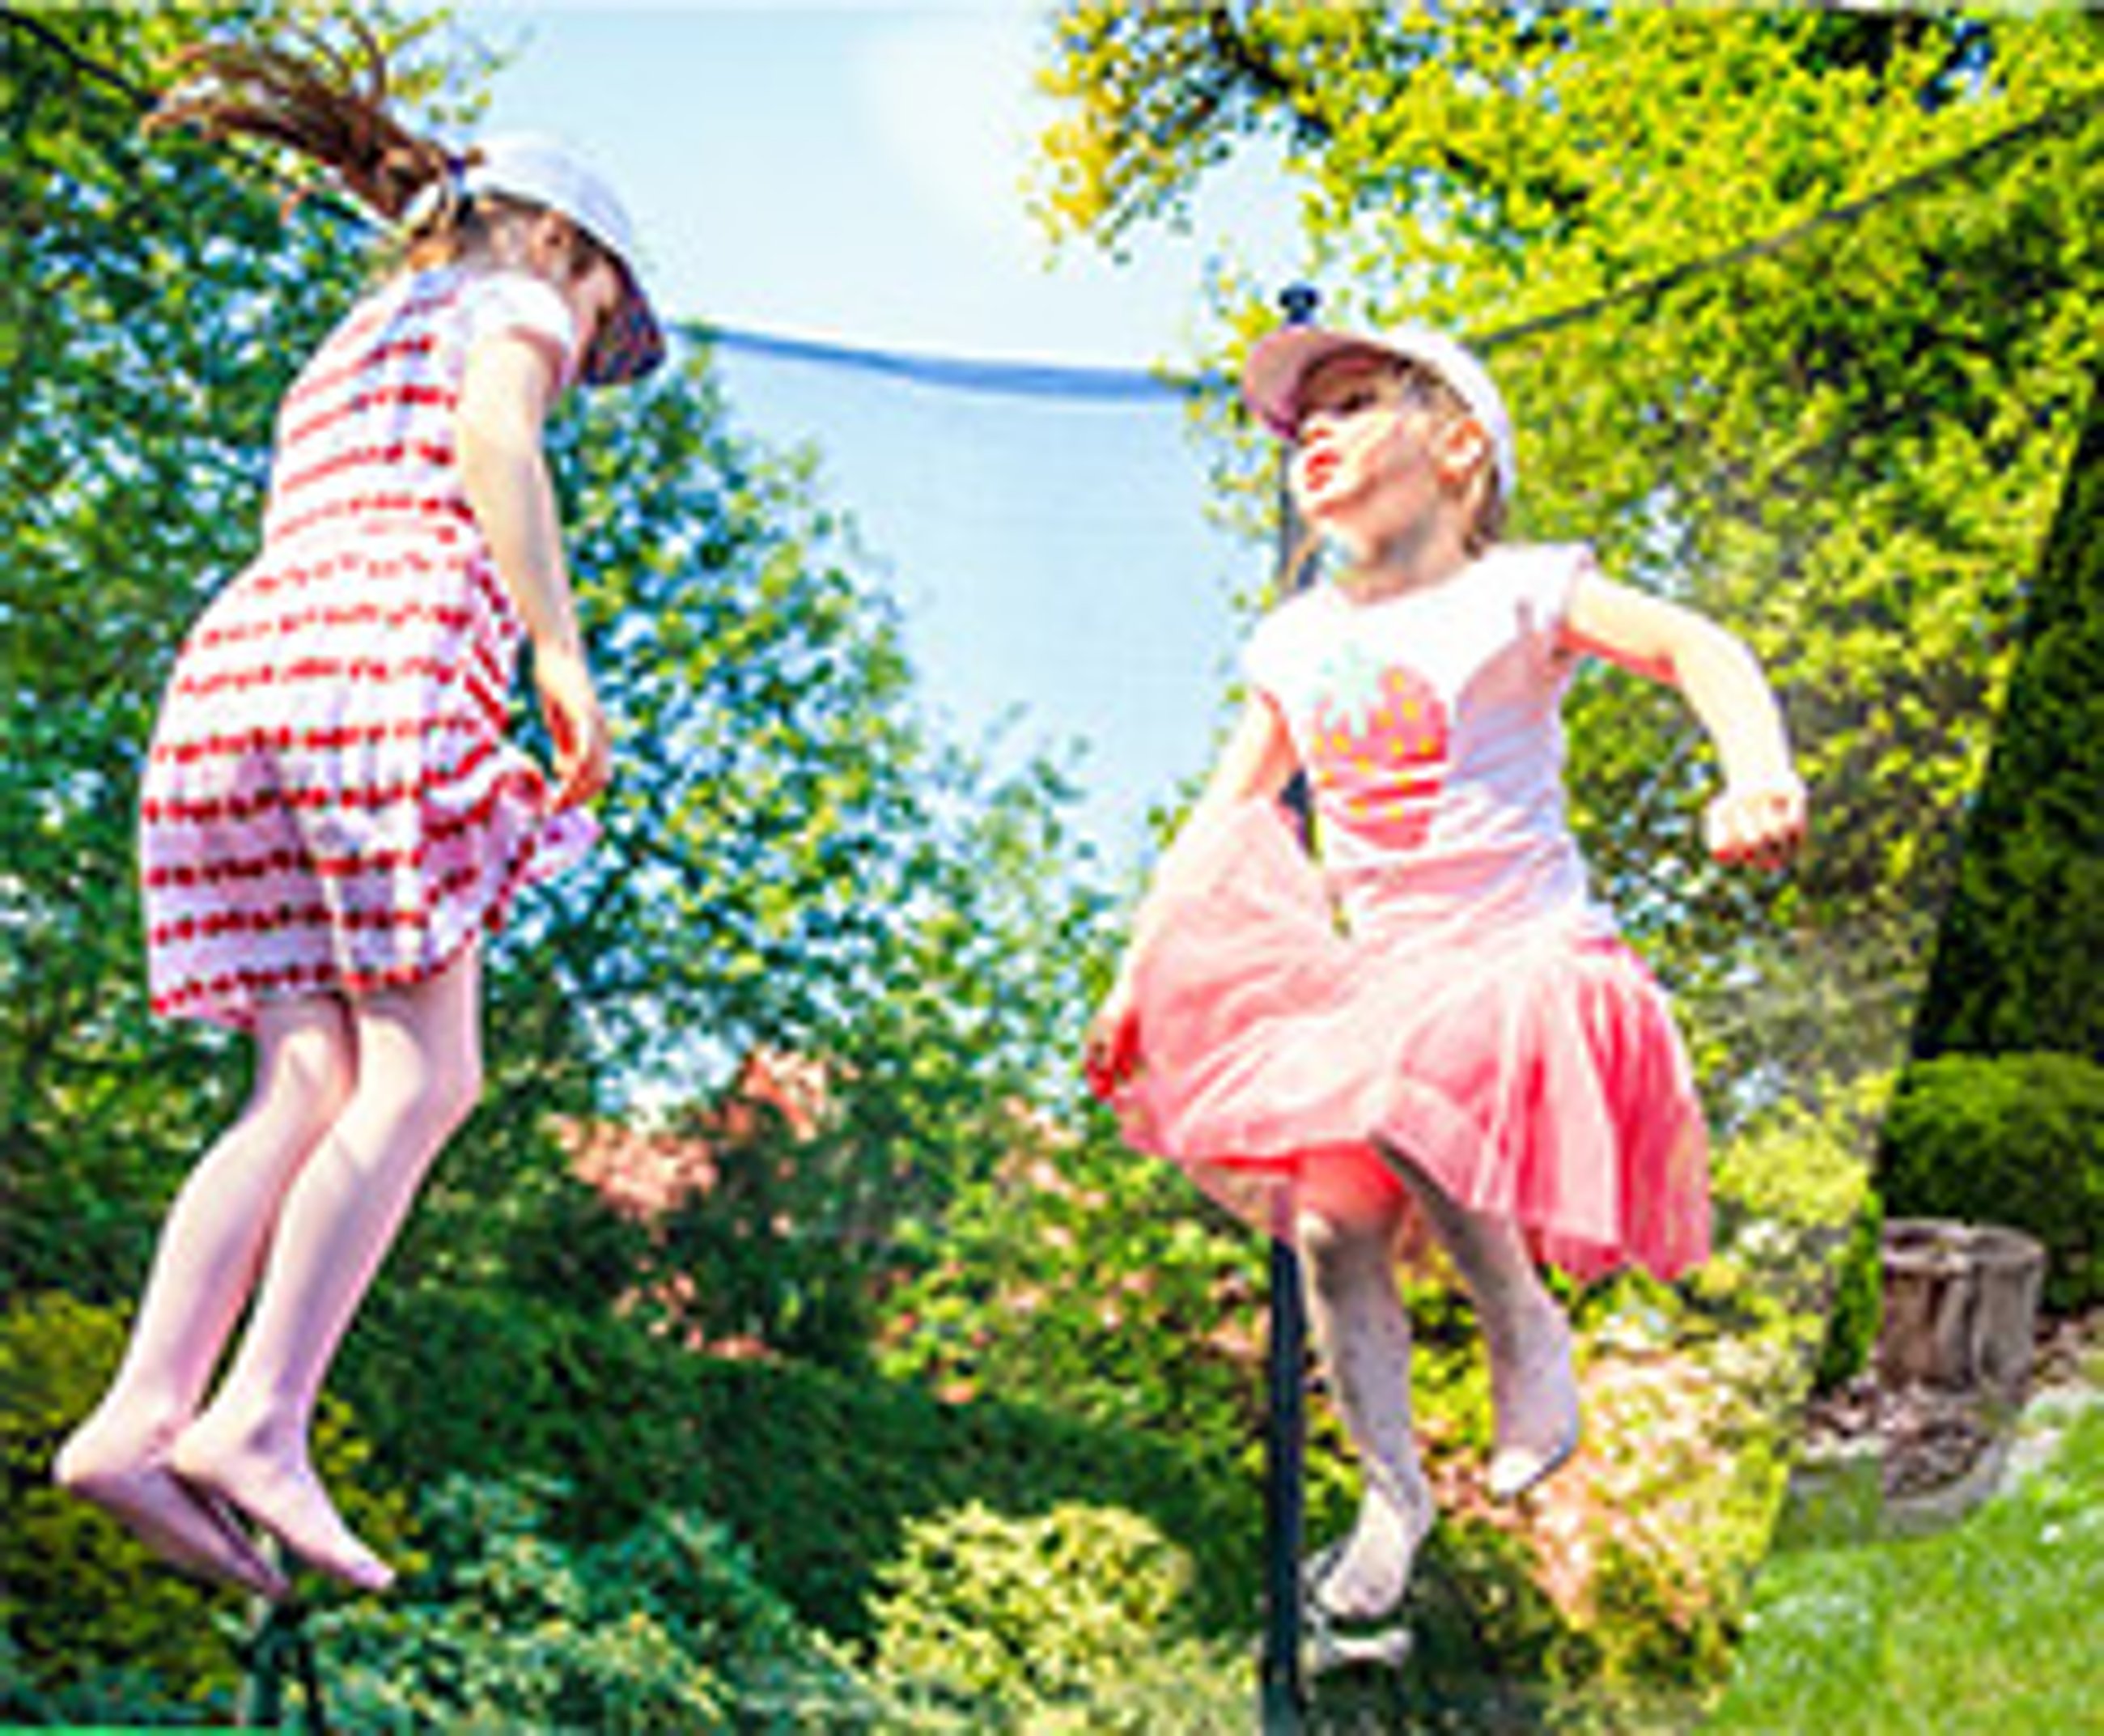 Kinder lachen und springen gemeinsam auf einem Trampolin in einem sonnigen Garten